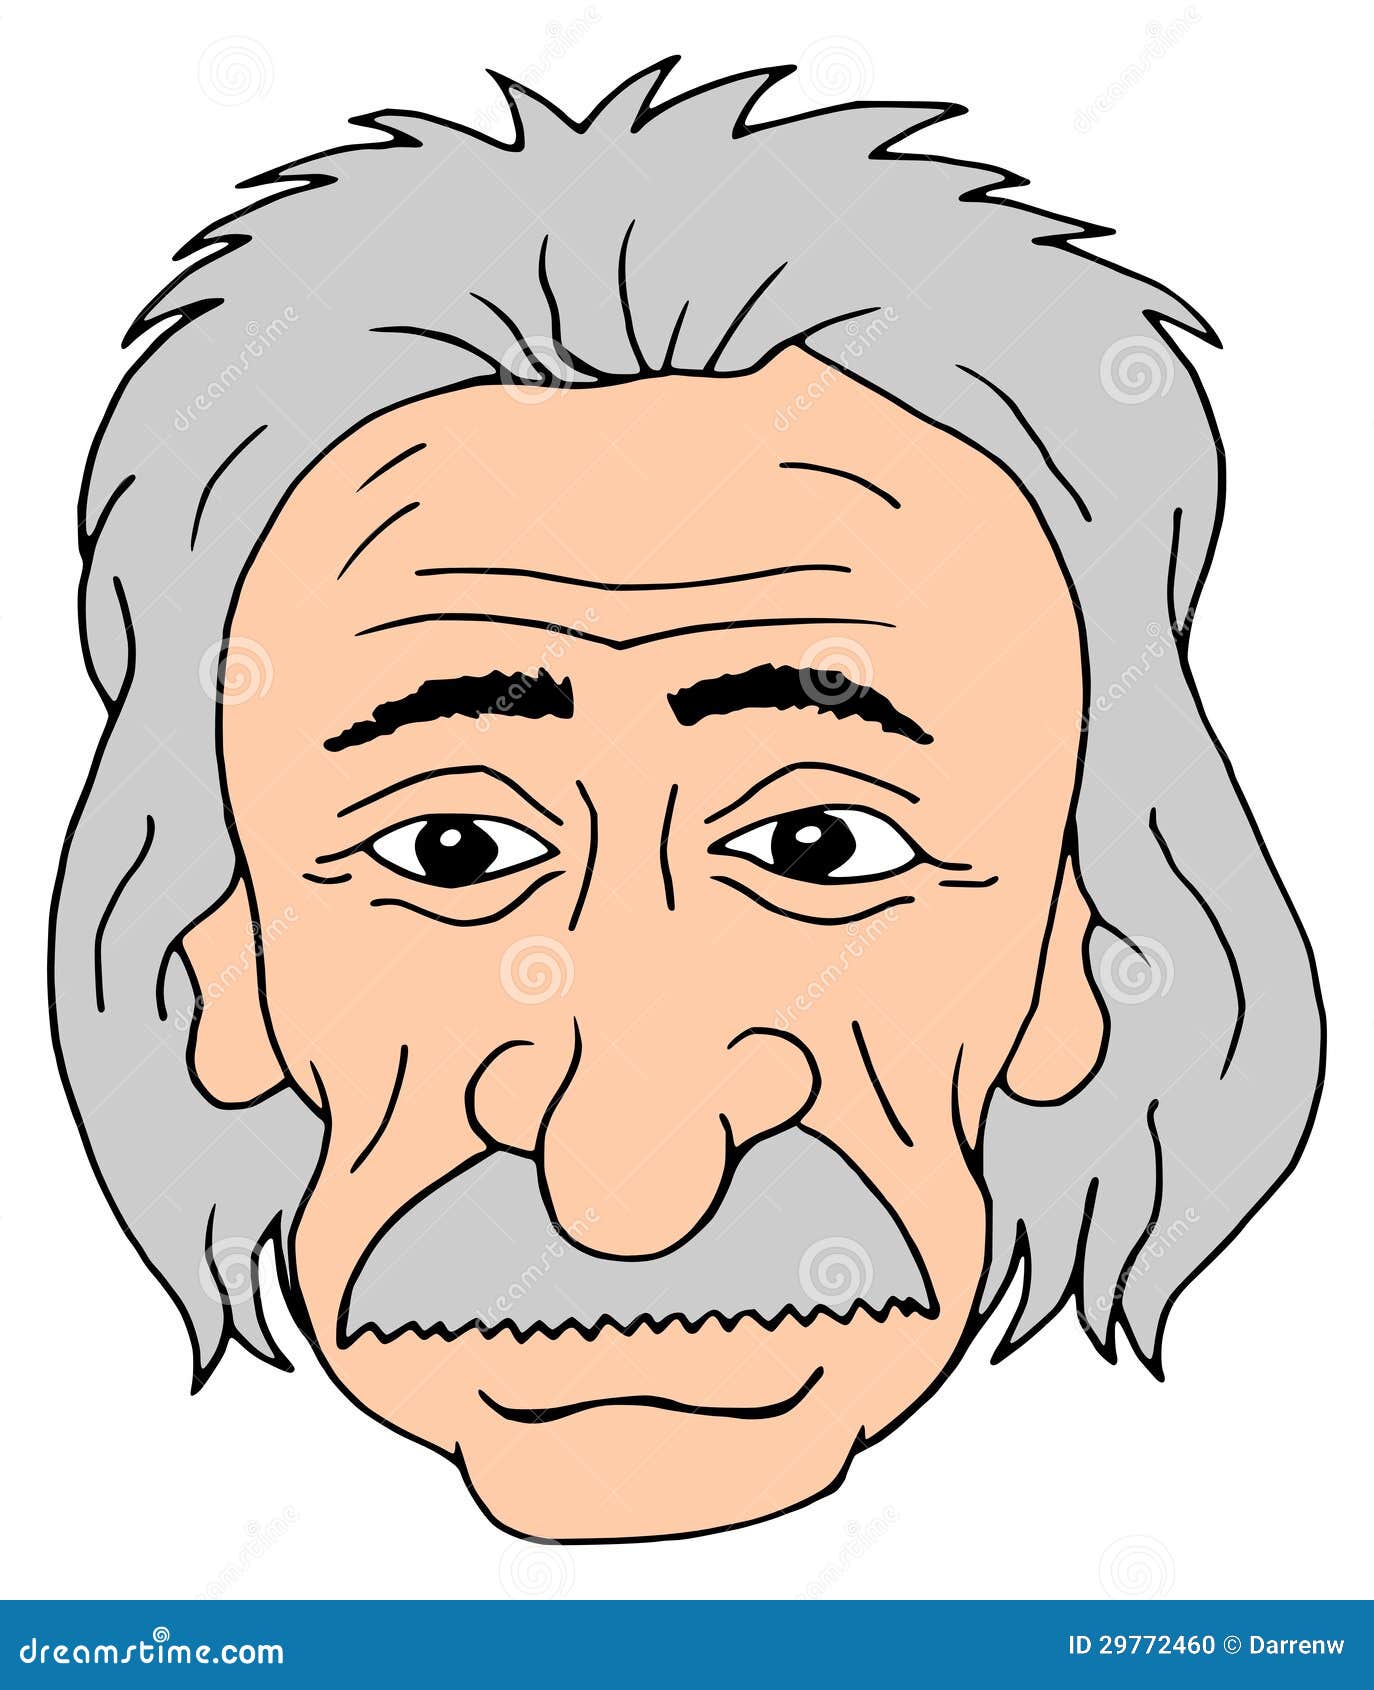 Einstein head stock illustration. Illustration of portrait - 29772460